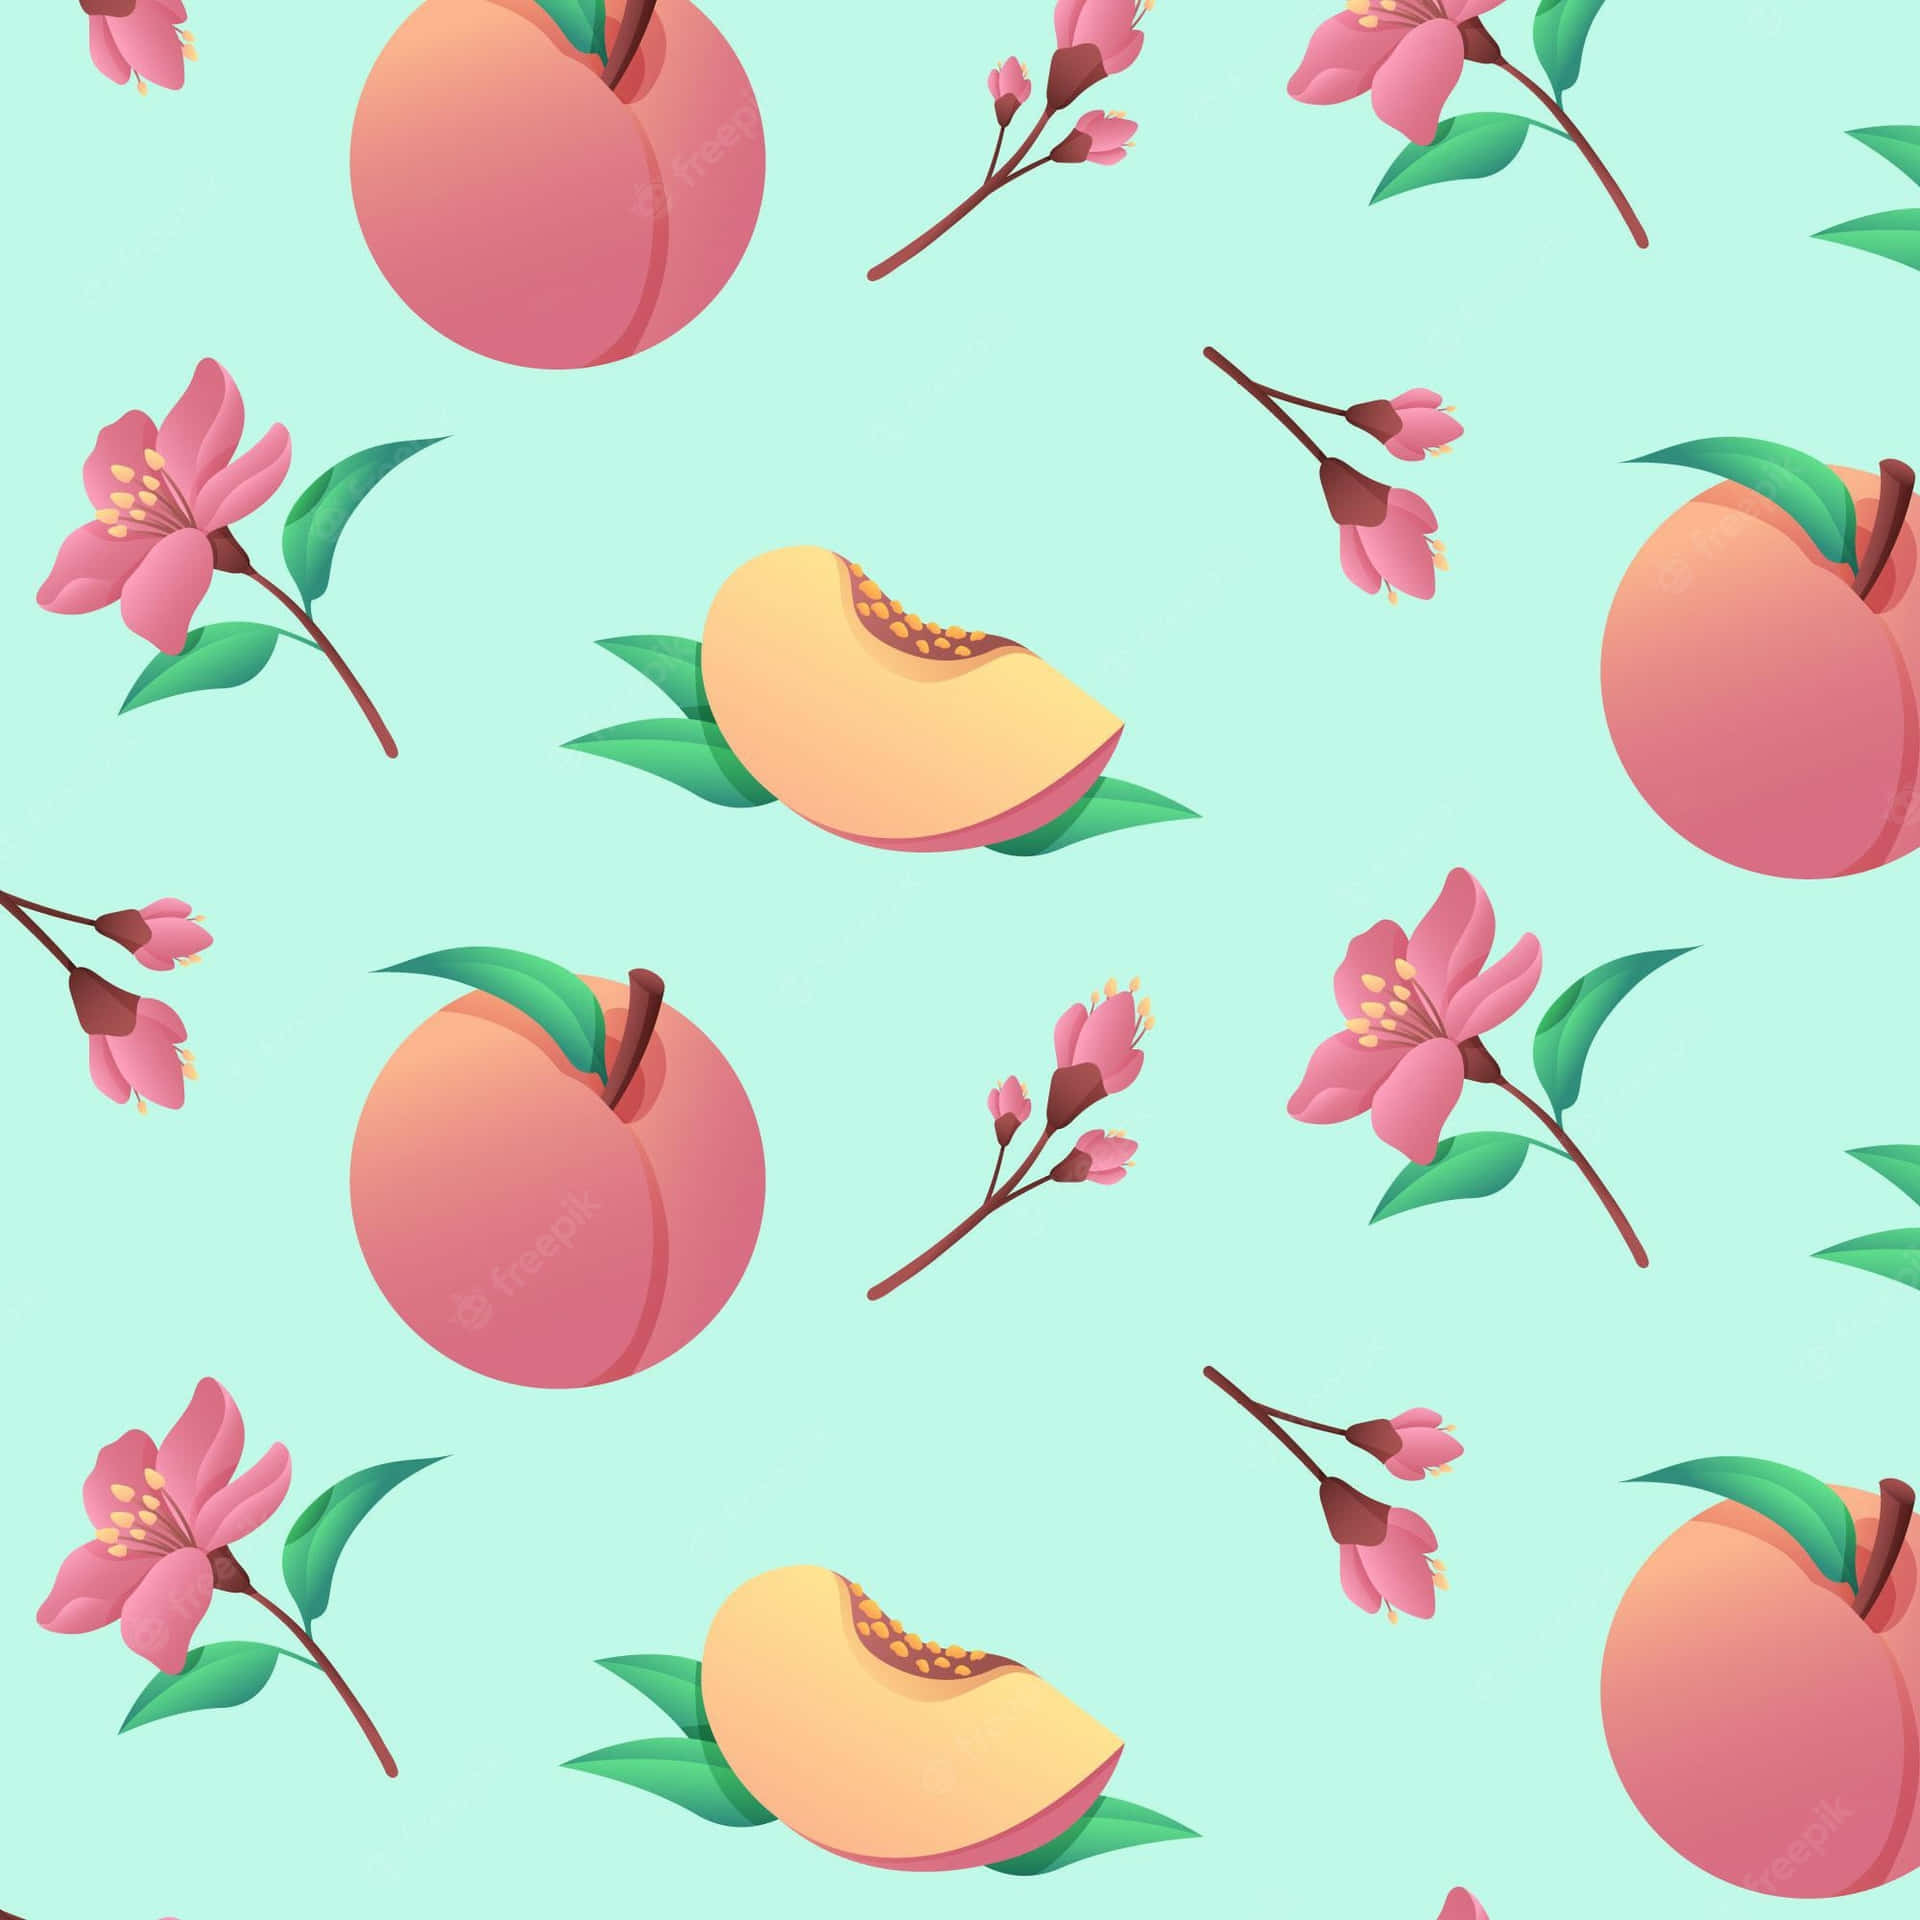 Soft and Succulent Cute Peach Wallpaper